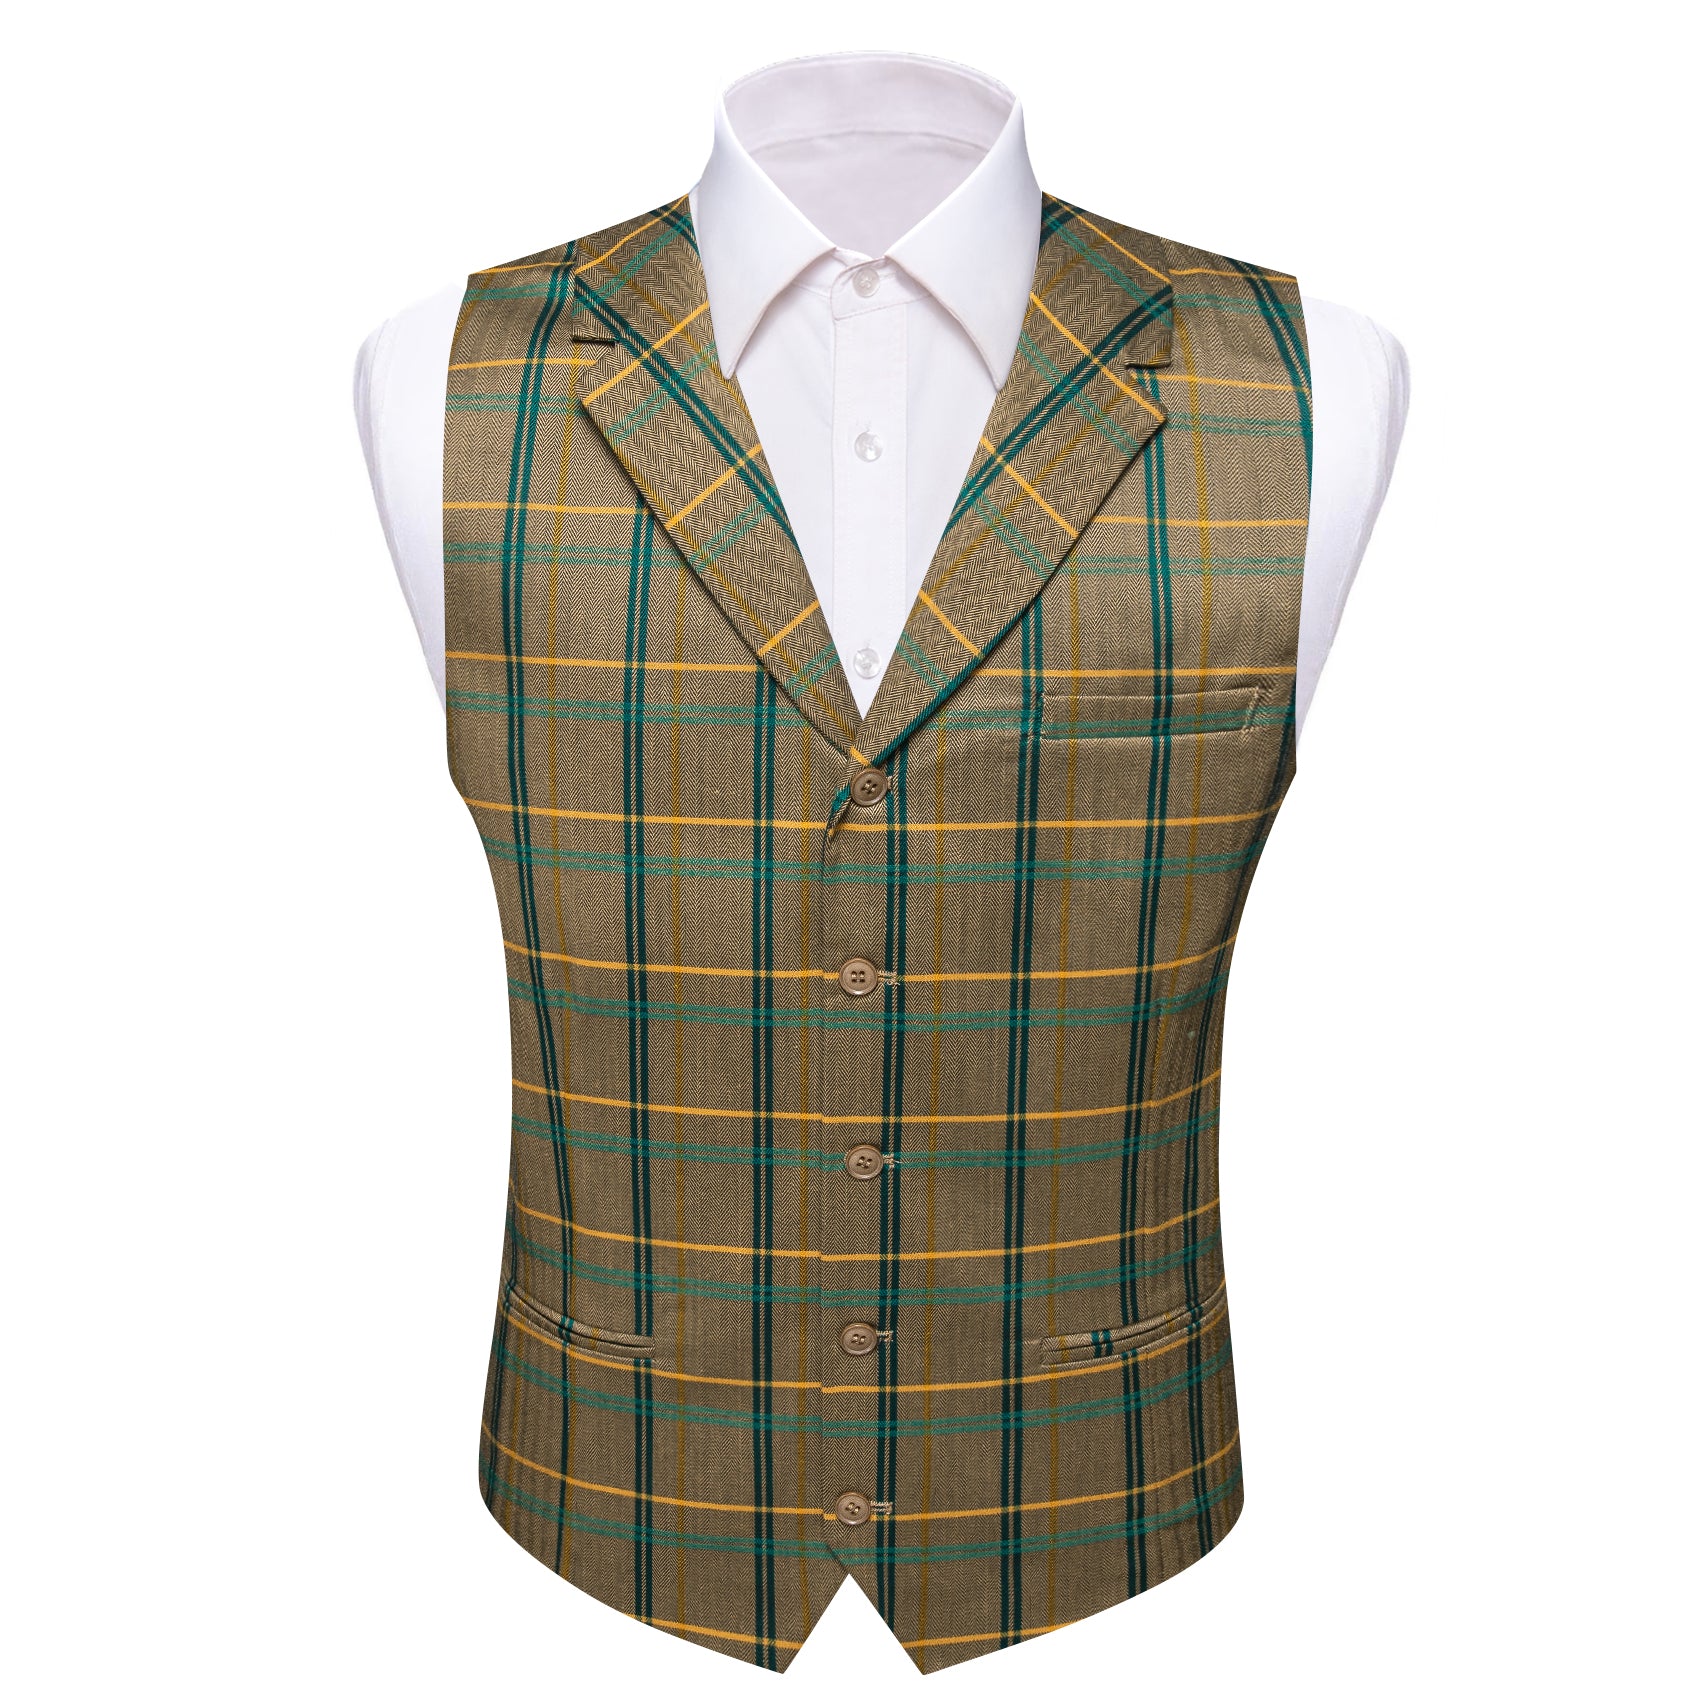 Fashion (01 Ligth Green)Men's Plaid Print Business Vest Suit